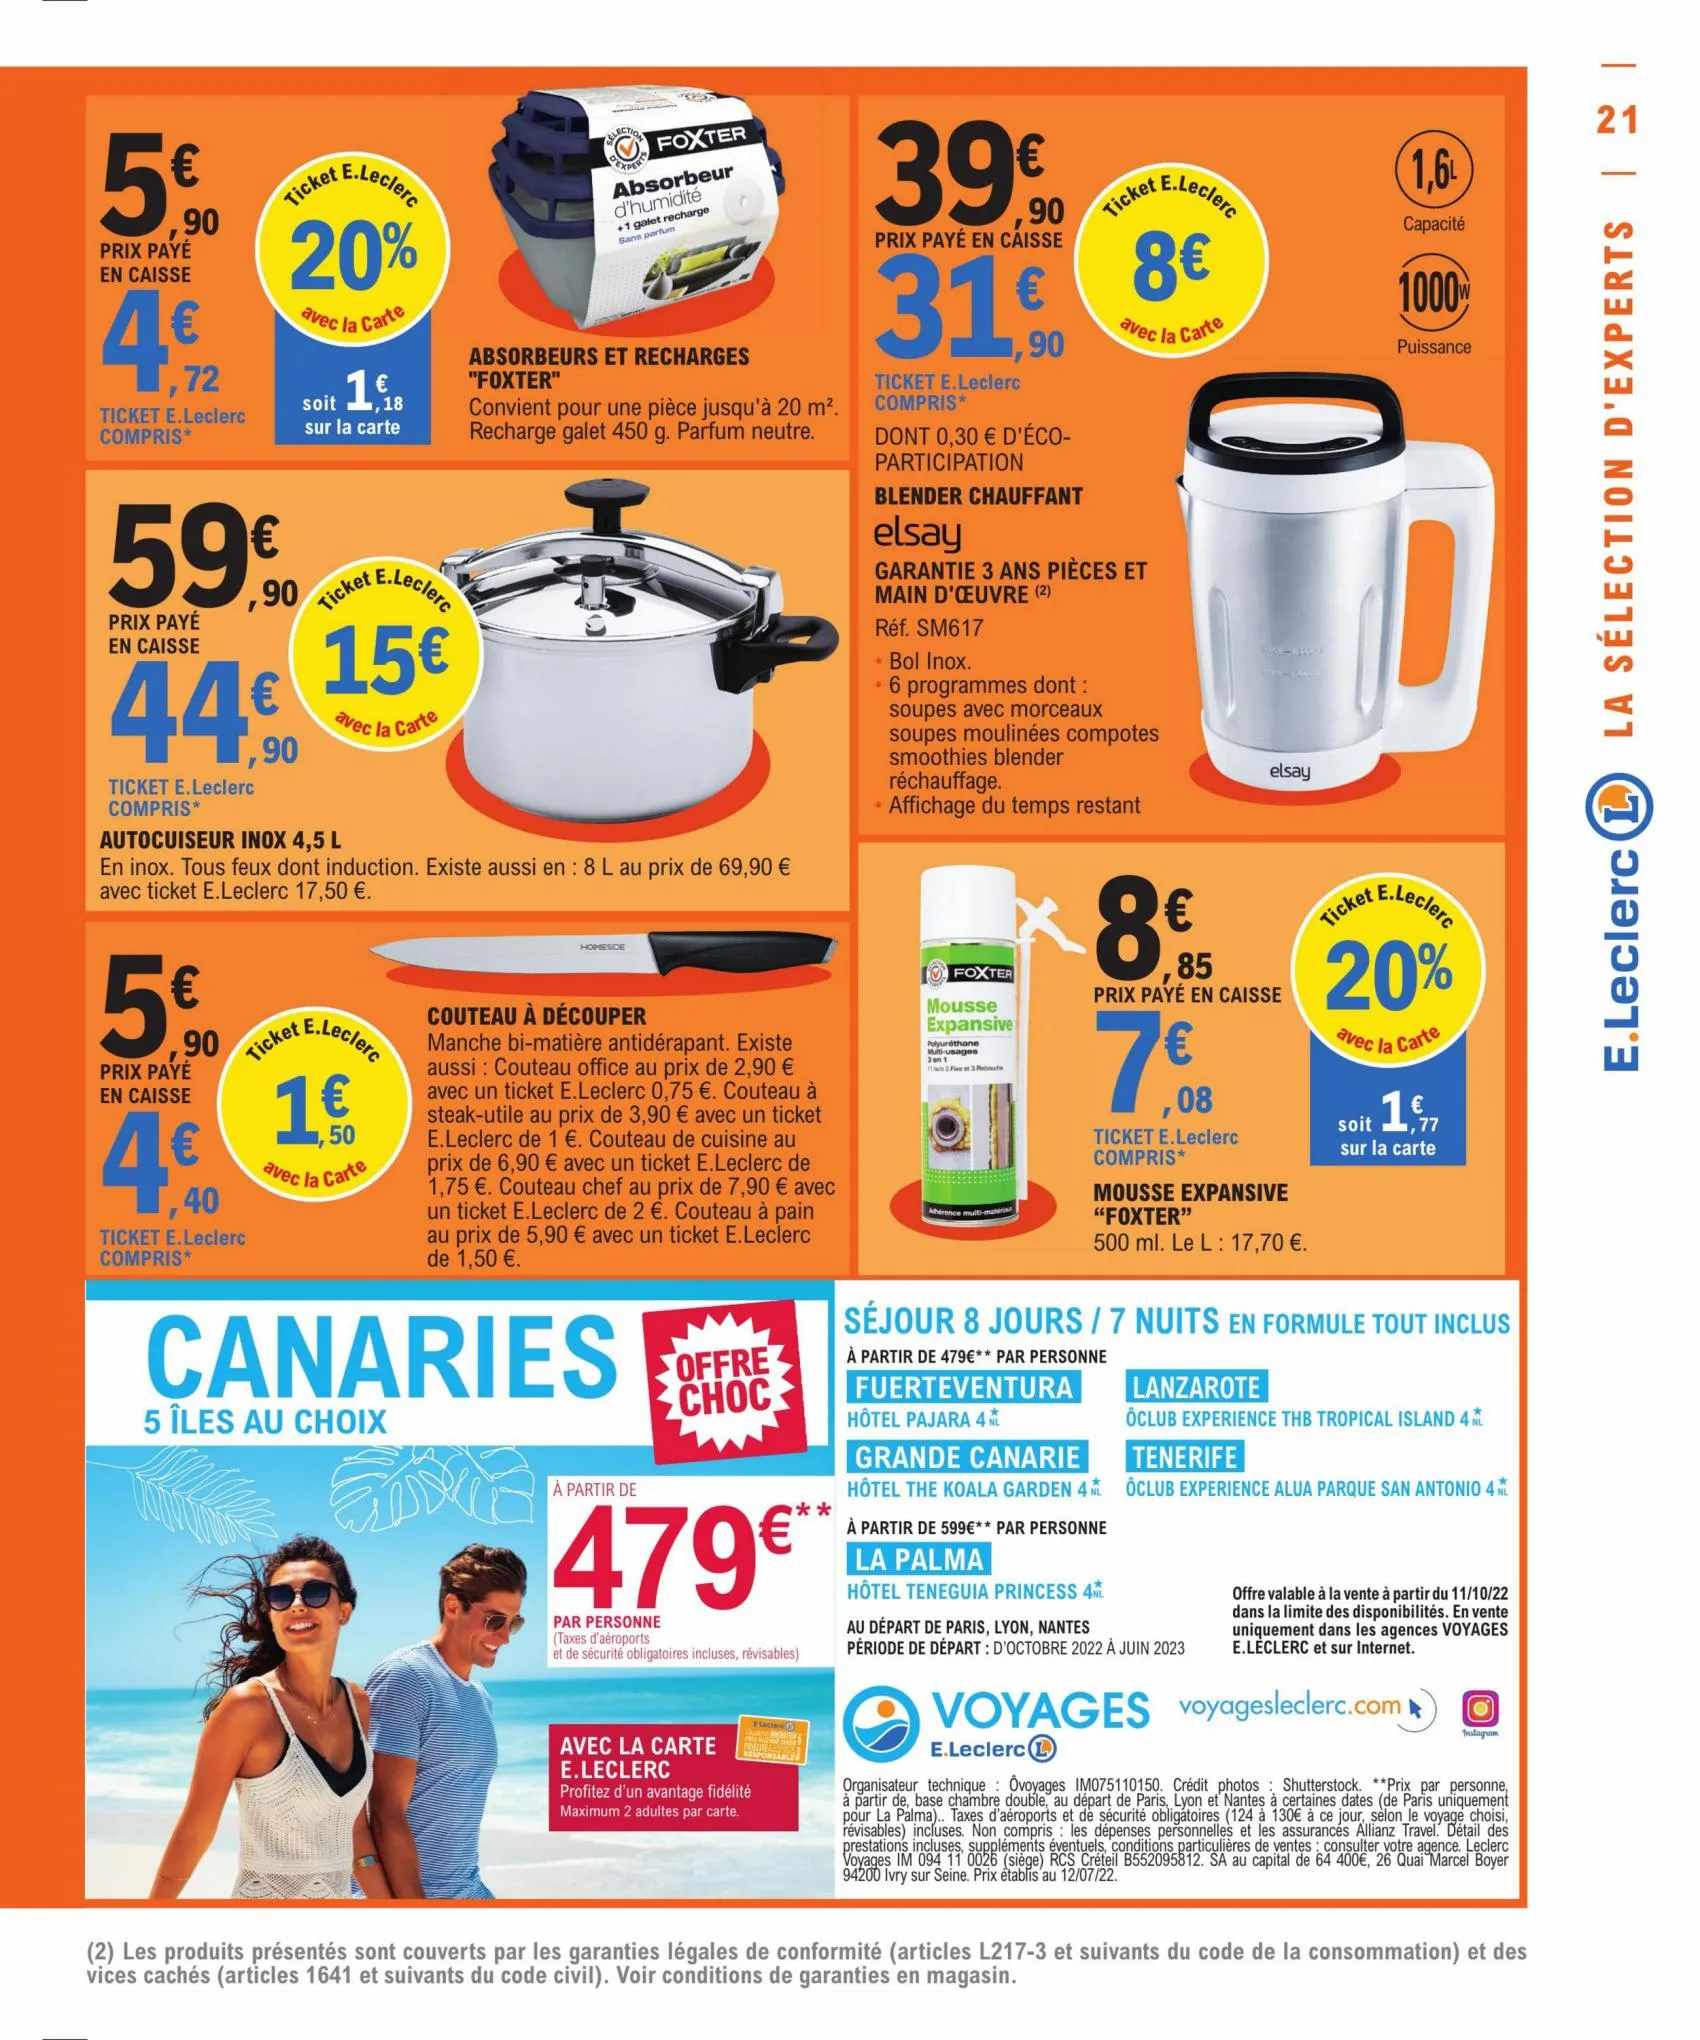 Catalogue Des offres qui feront plaisir a votre budget, page 00021